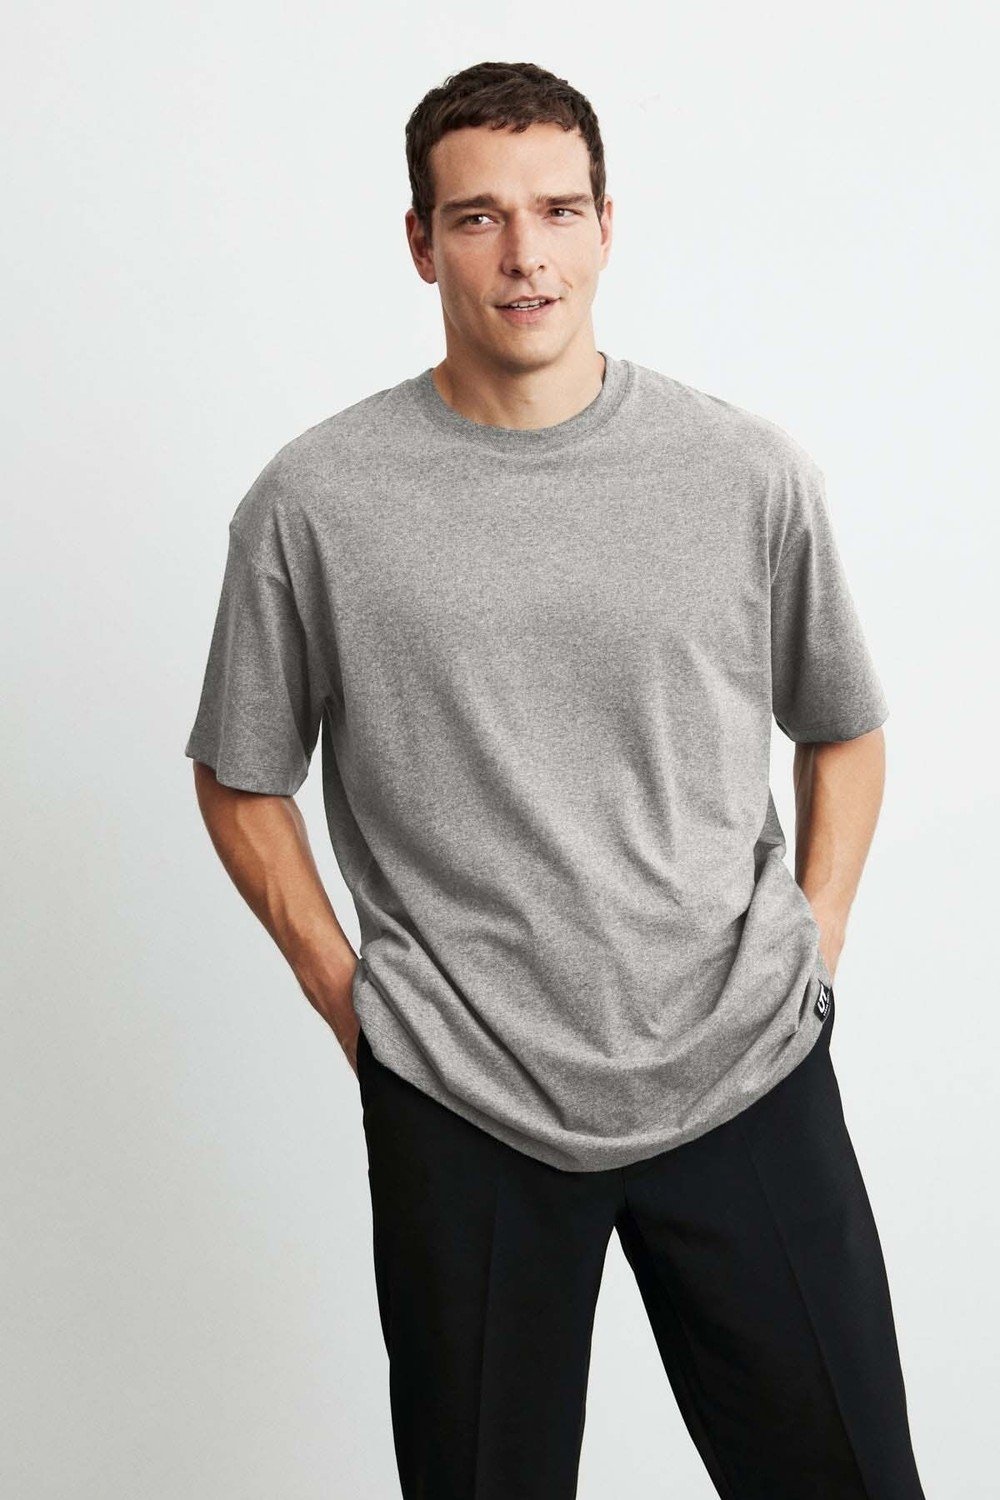 GRIMELANGE T-Shirts - Grau - Oversize